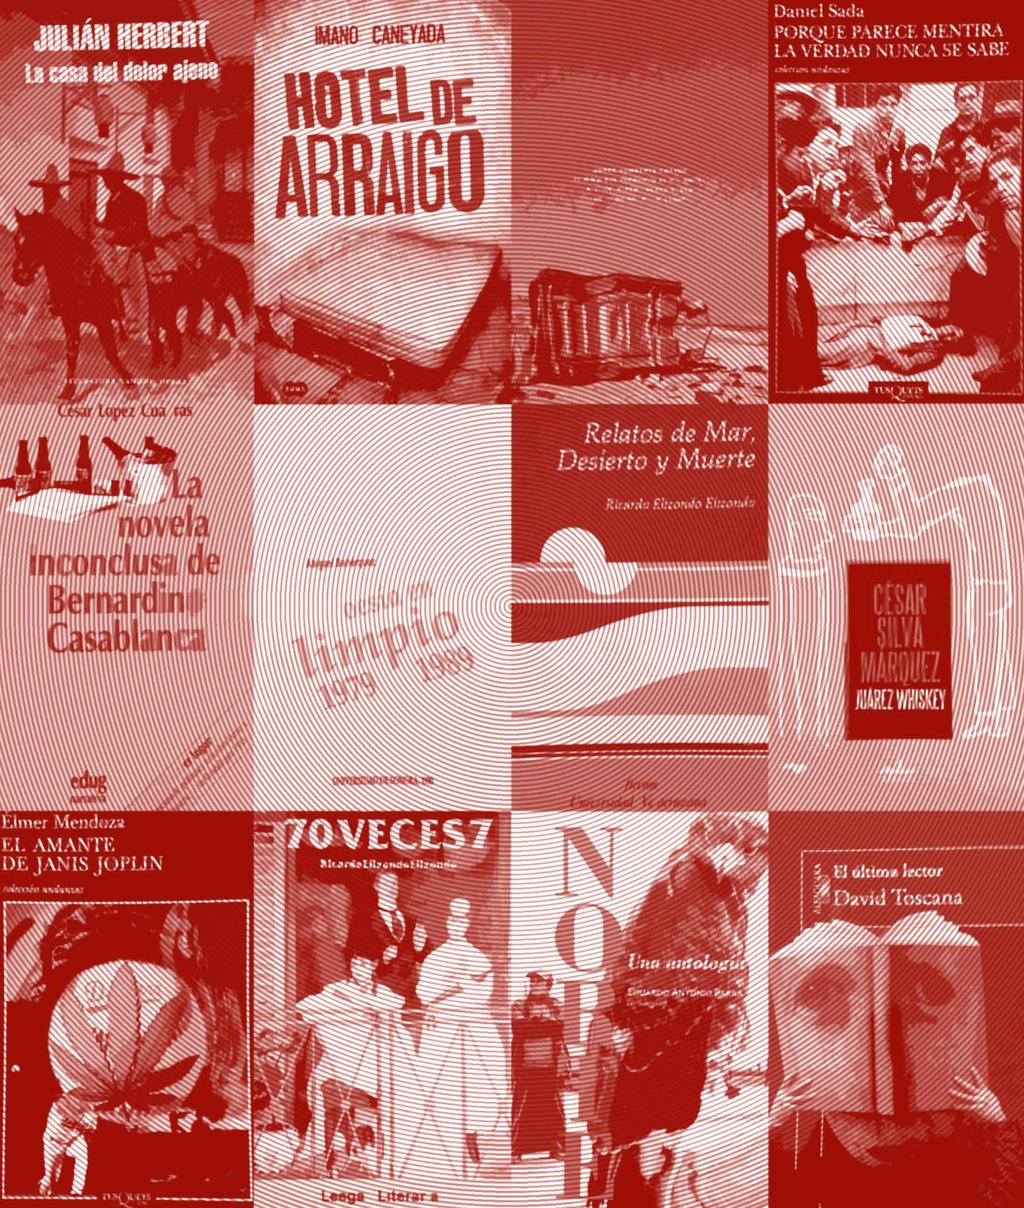 El Colegio de San Luis, la Universidad Autónoma de San Luis Potosí y la Dirección de Publicaciones y Literatura de la Secretaría de Cultura de San Luis Potosí invitan al Coloquio LITERATURA MEXICANA